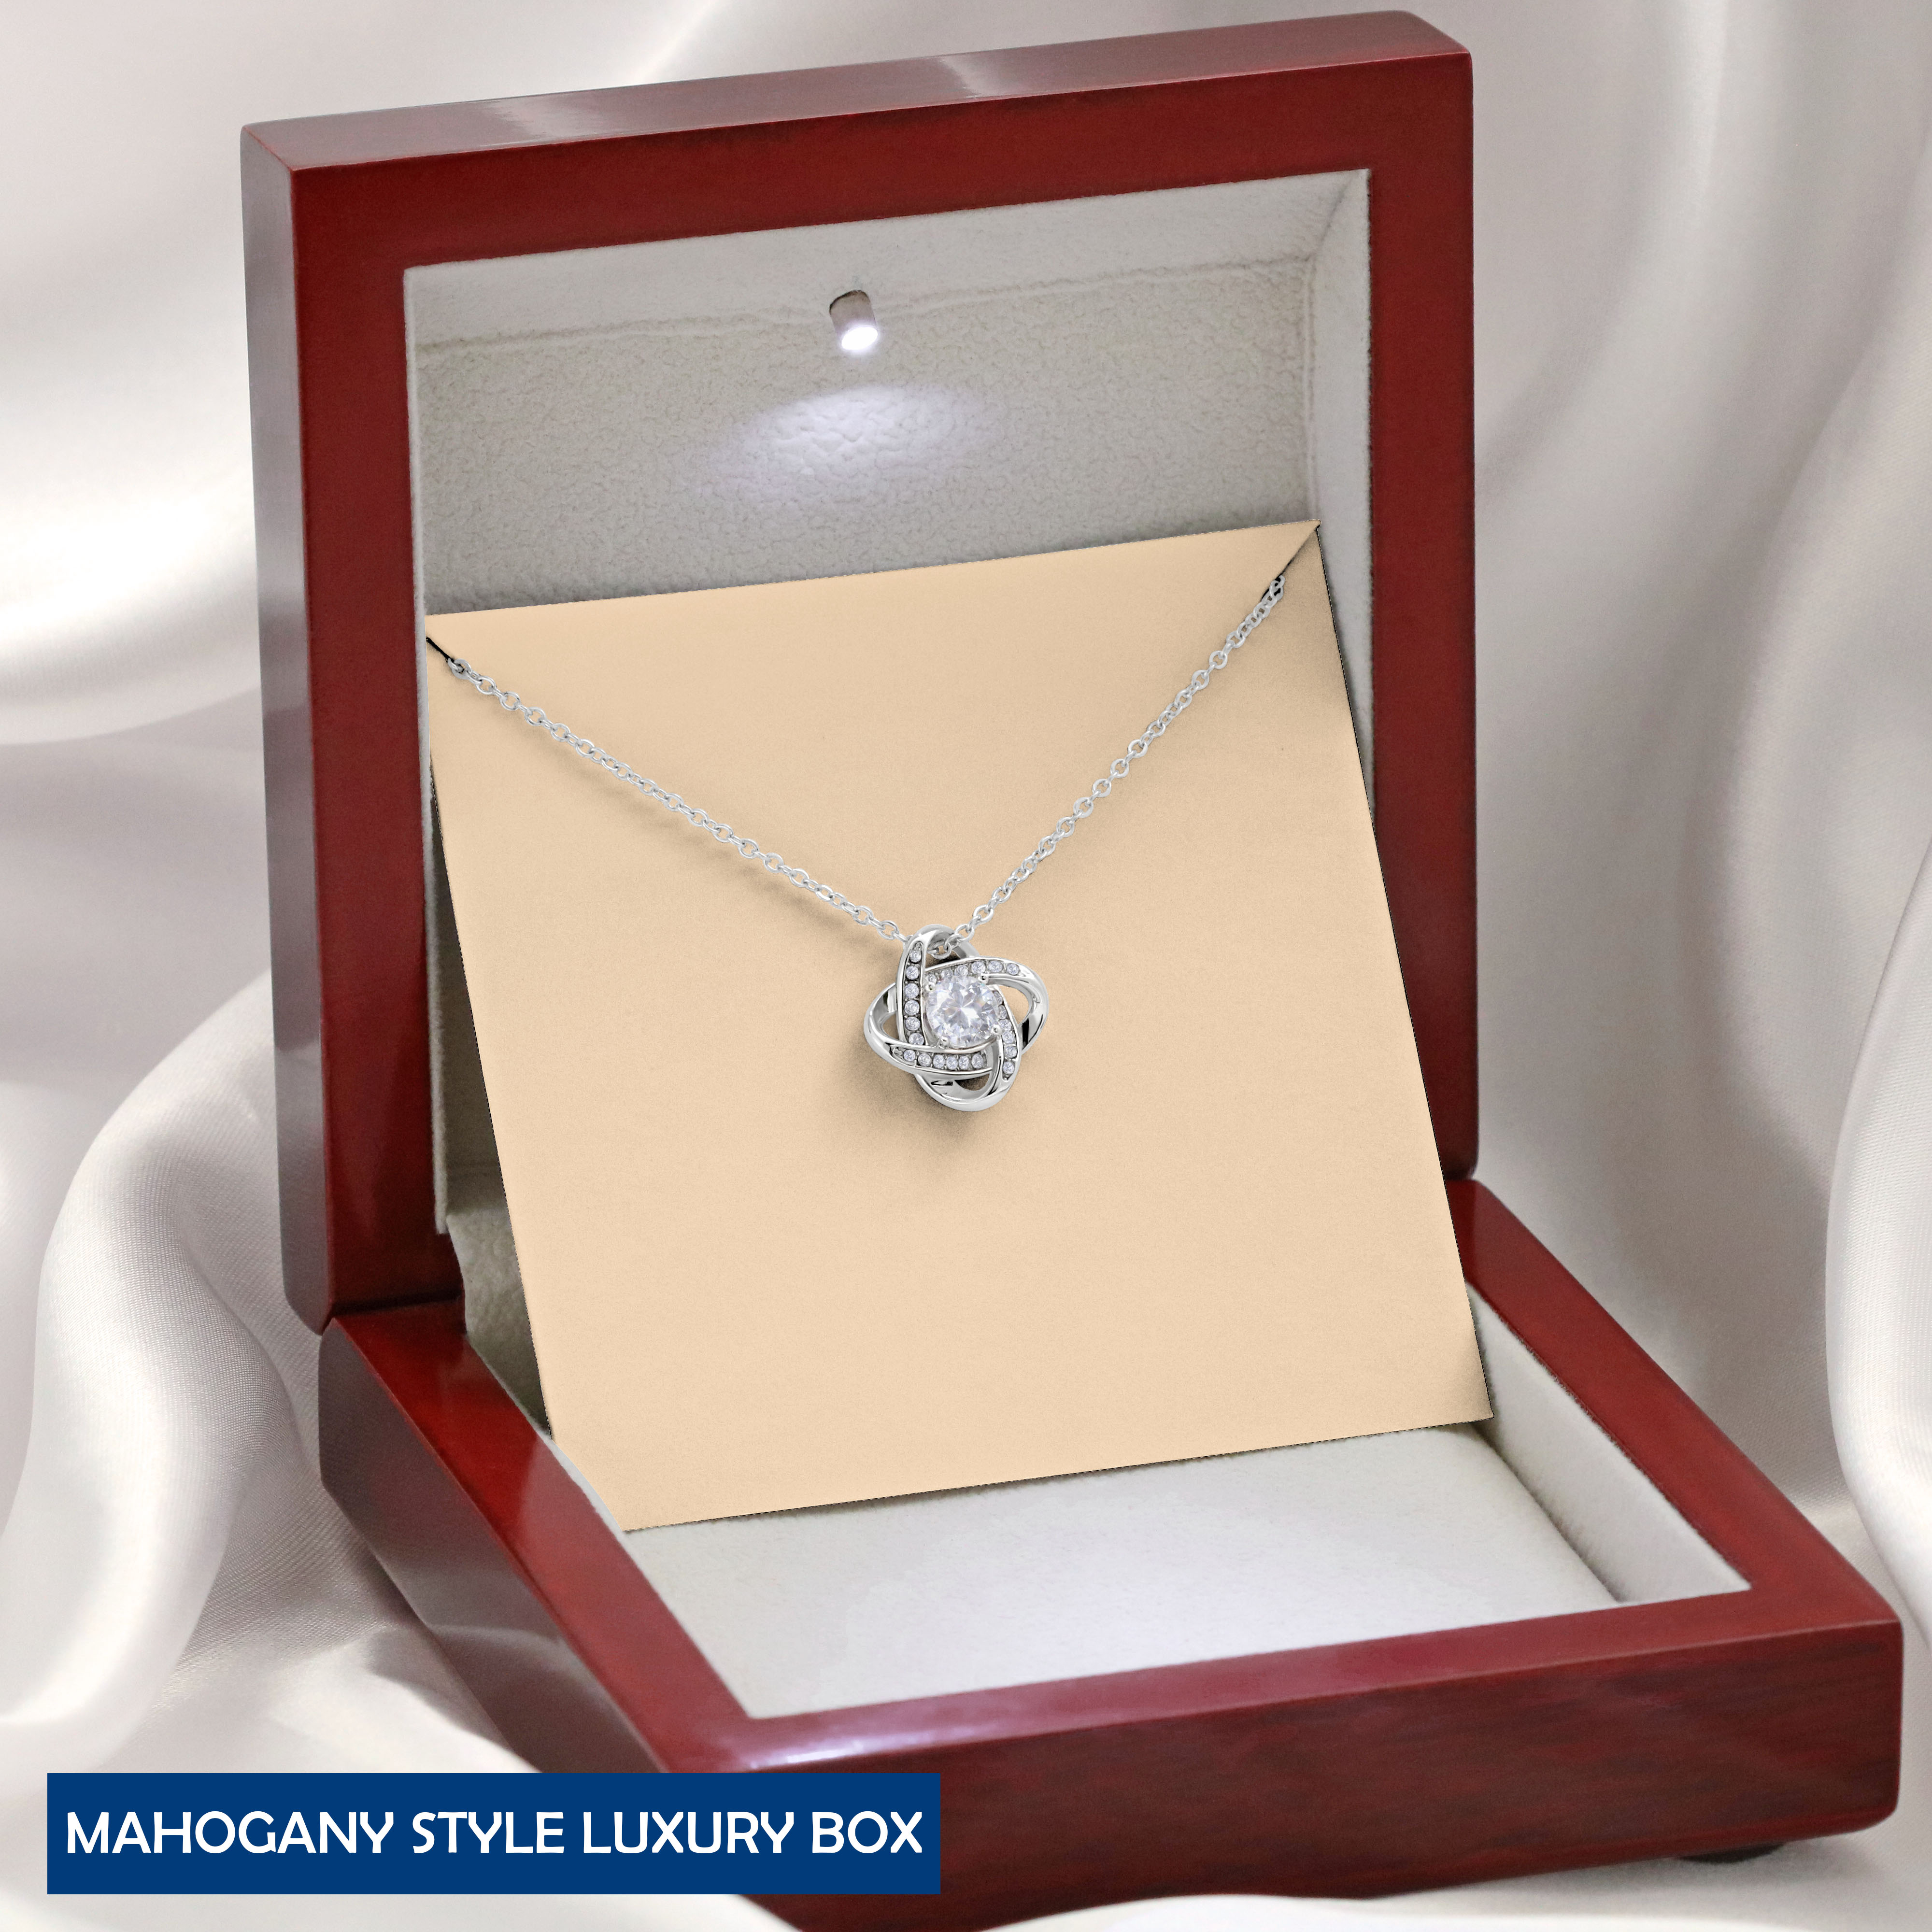  Mahogany Style Luxury Box